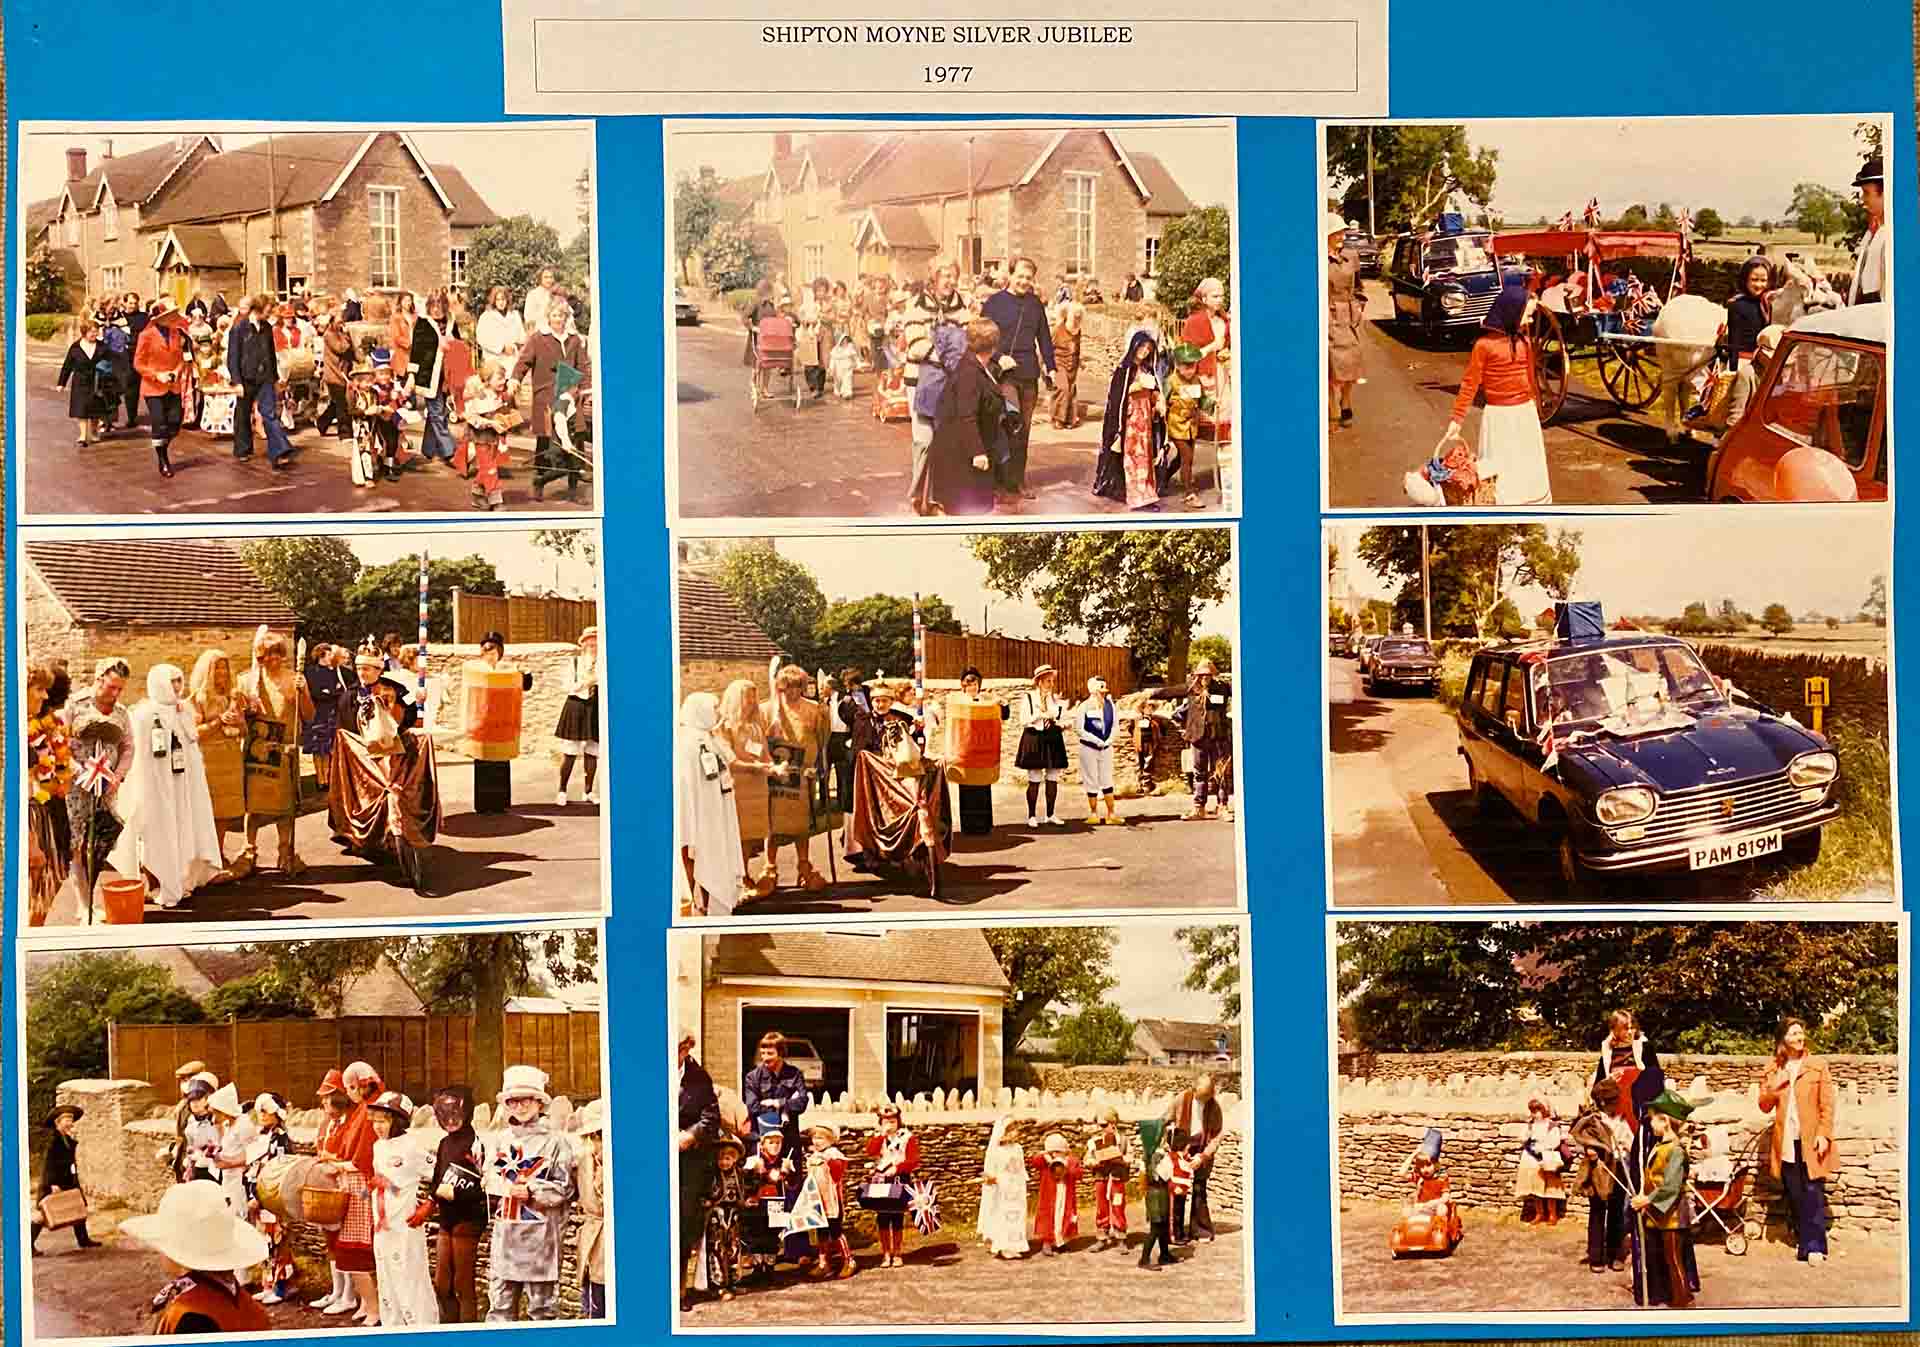 Shipton Moyne Silver Jubilee Celebrations In 1977